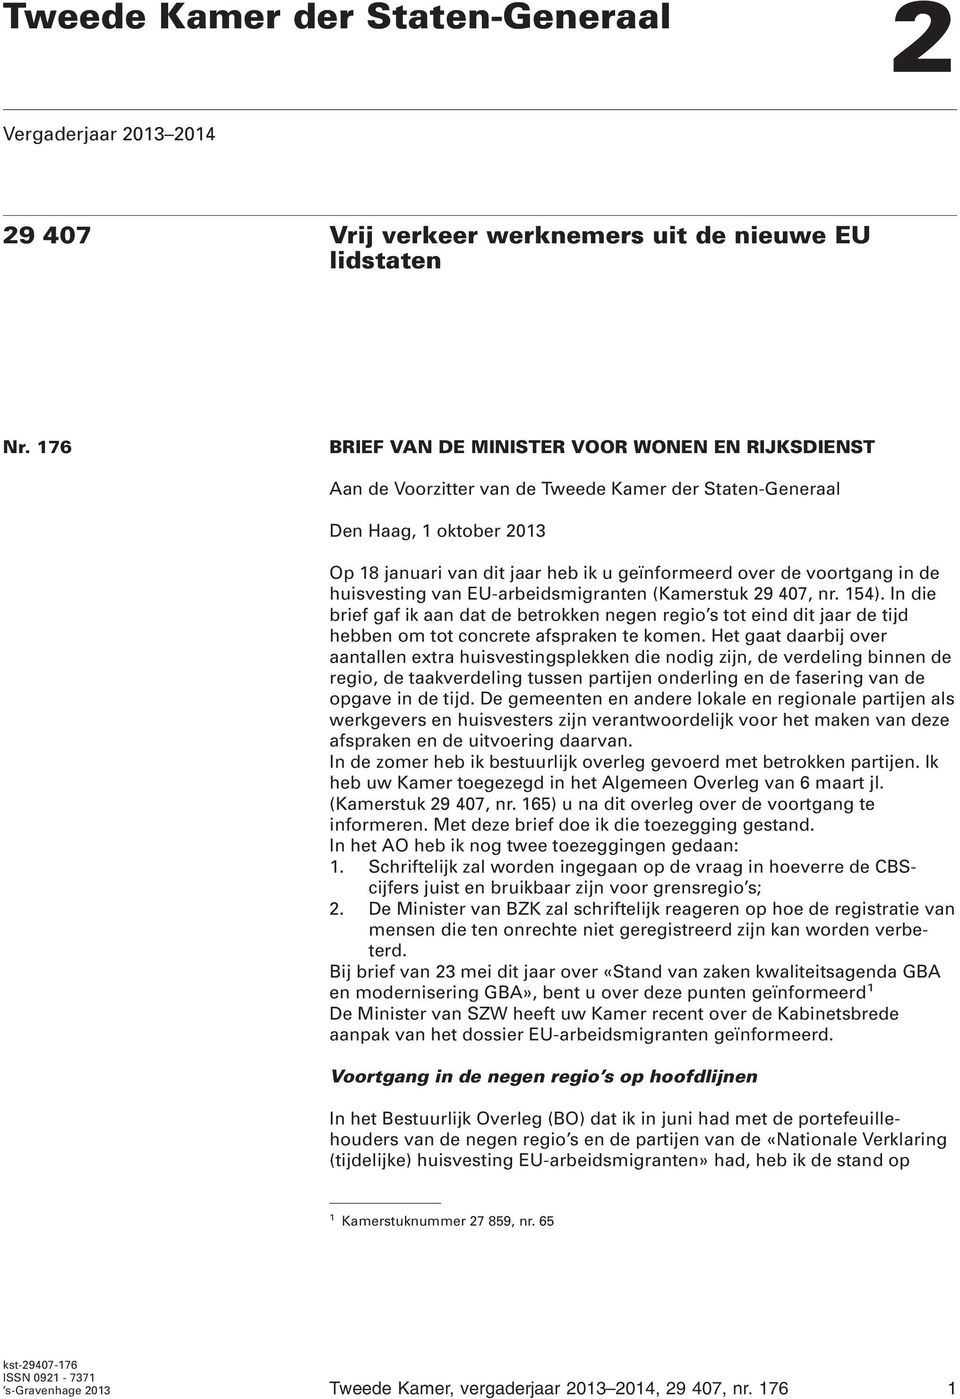 voortgang in de huisvesting van EU-arbeidsmigranten (Kamerstuk 29 407, nr. 154).